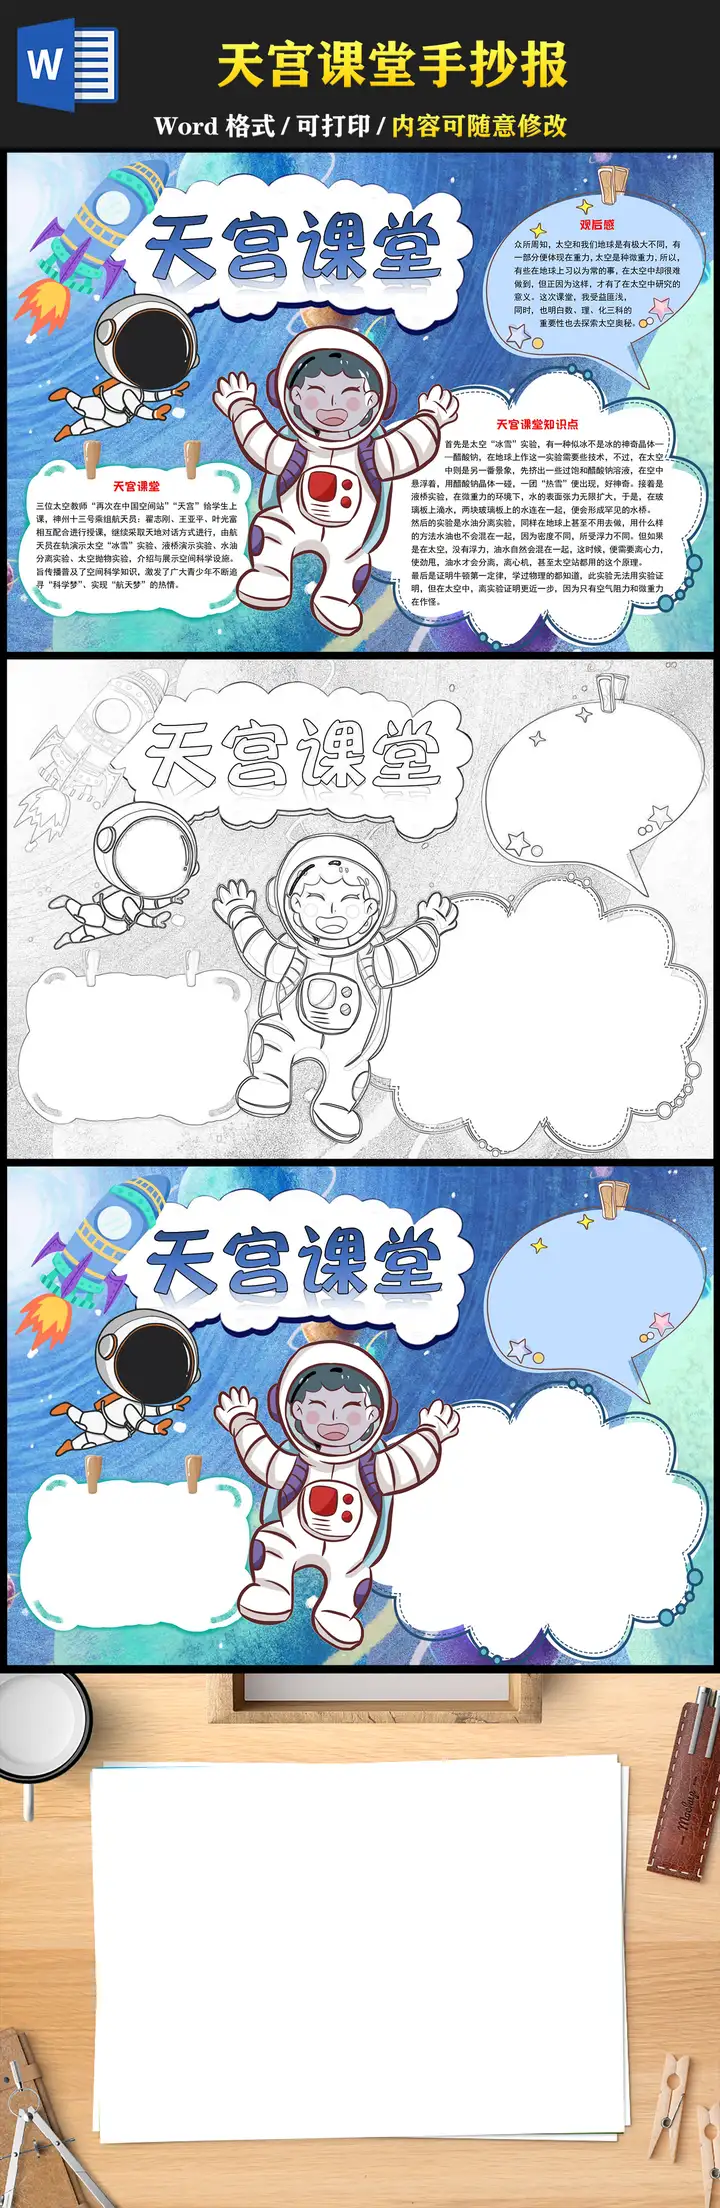 天宫课堂手抄报蓝色宇宙可爱一起学习太空知识小报模板下载插图2